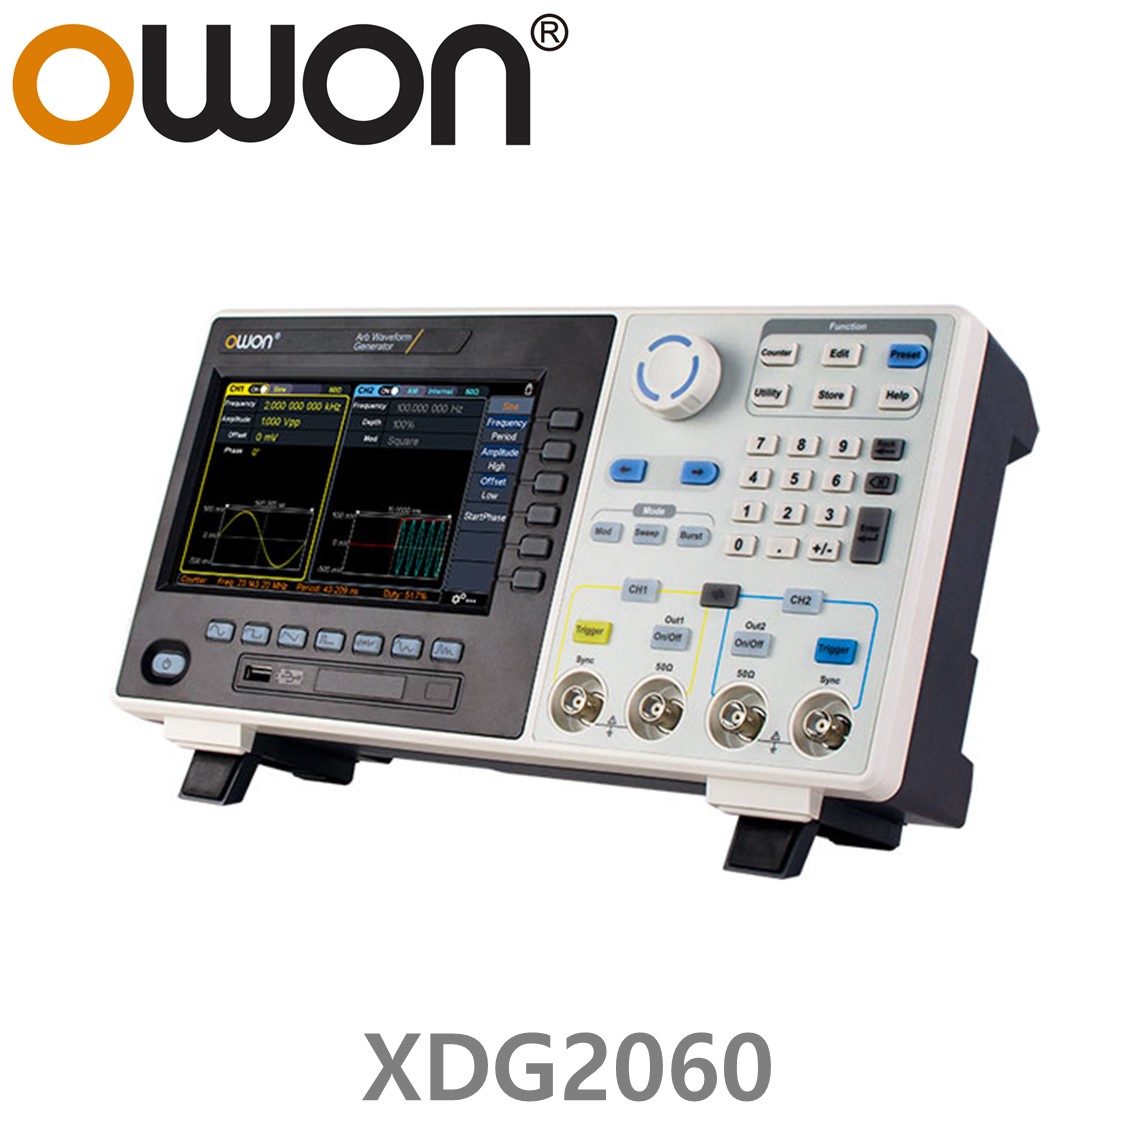 [ OWON ] XDG2060 임의 파형발생기 2CH, 60MHz, 500MS/s, 10M Memory